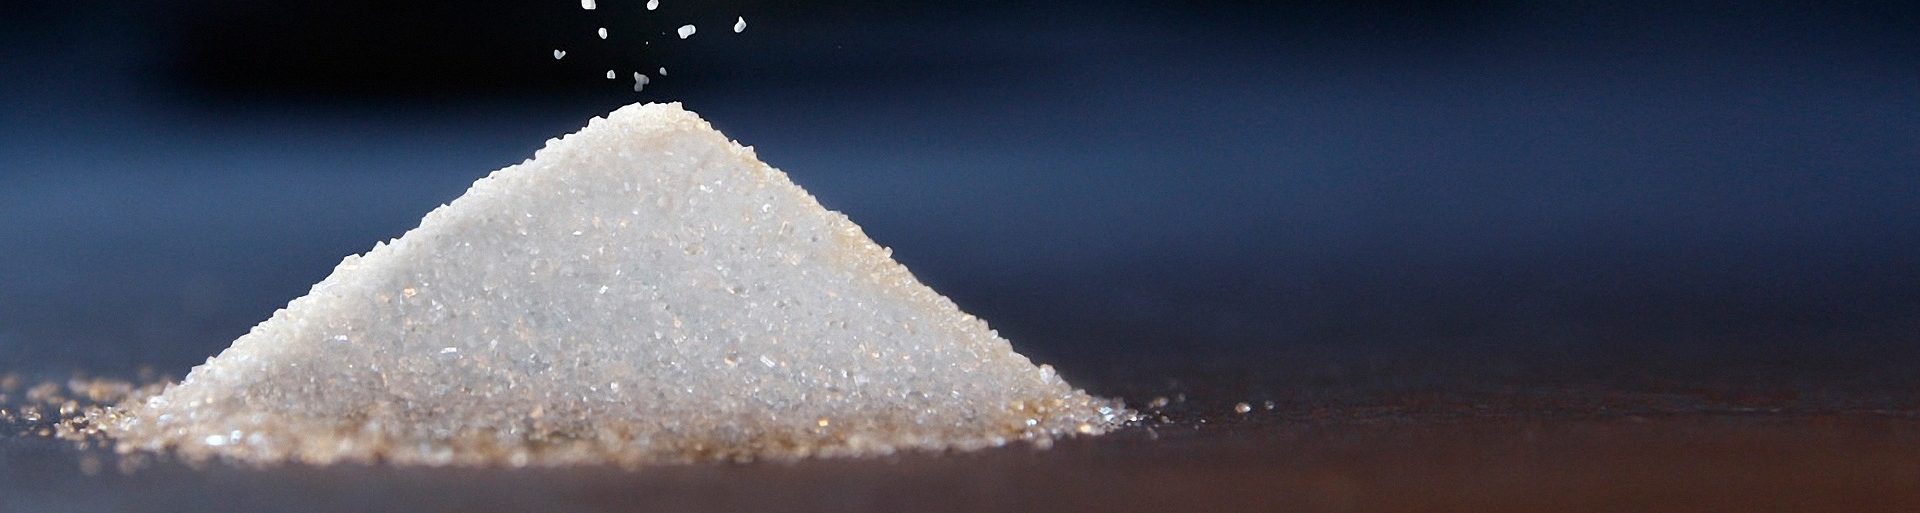 Влияние сахара на организм человека и его самочувствие